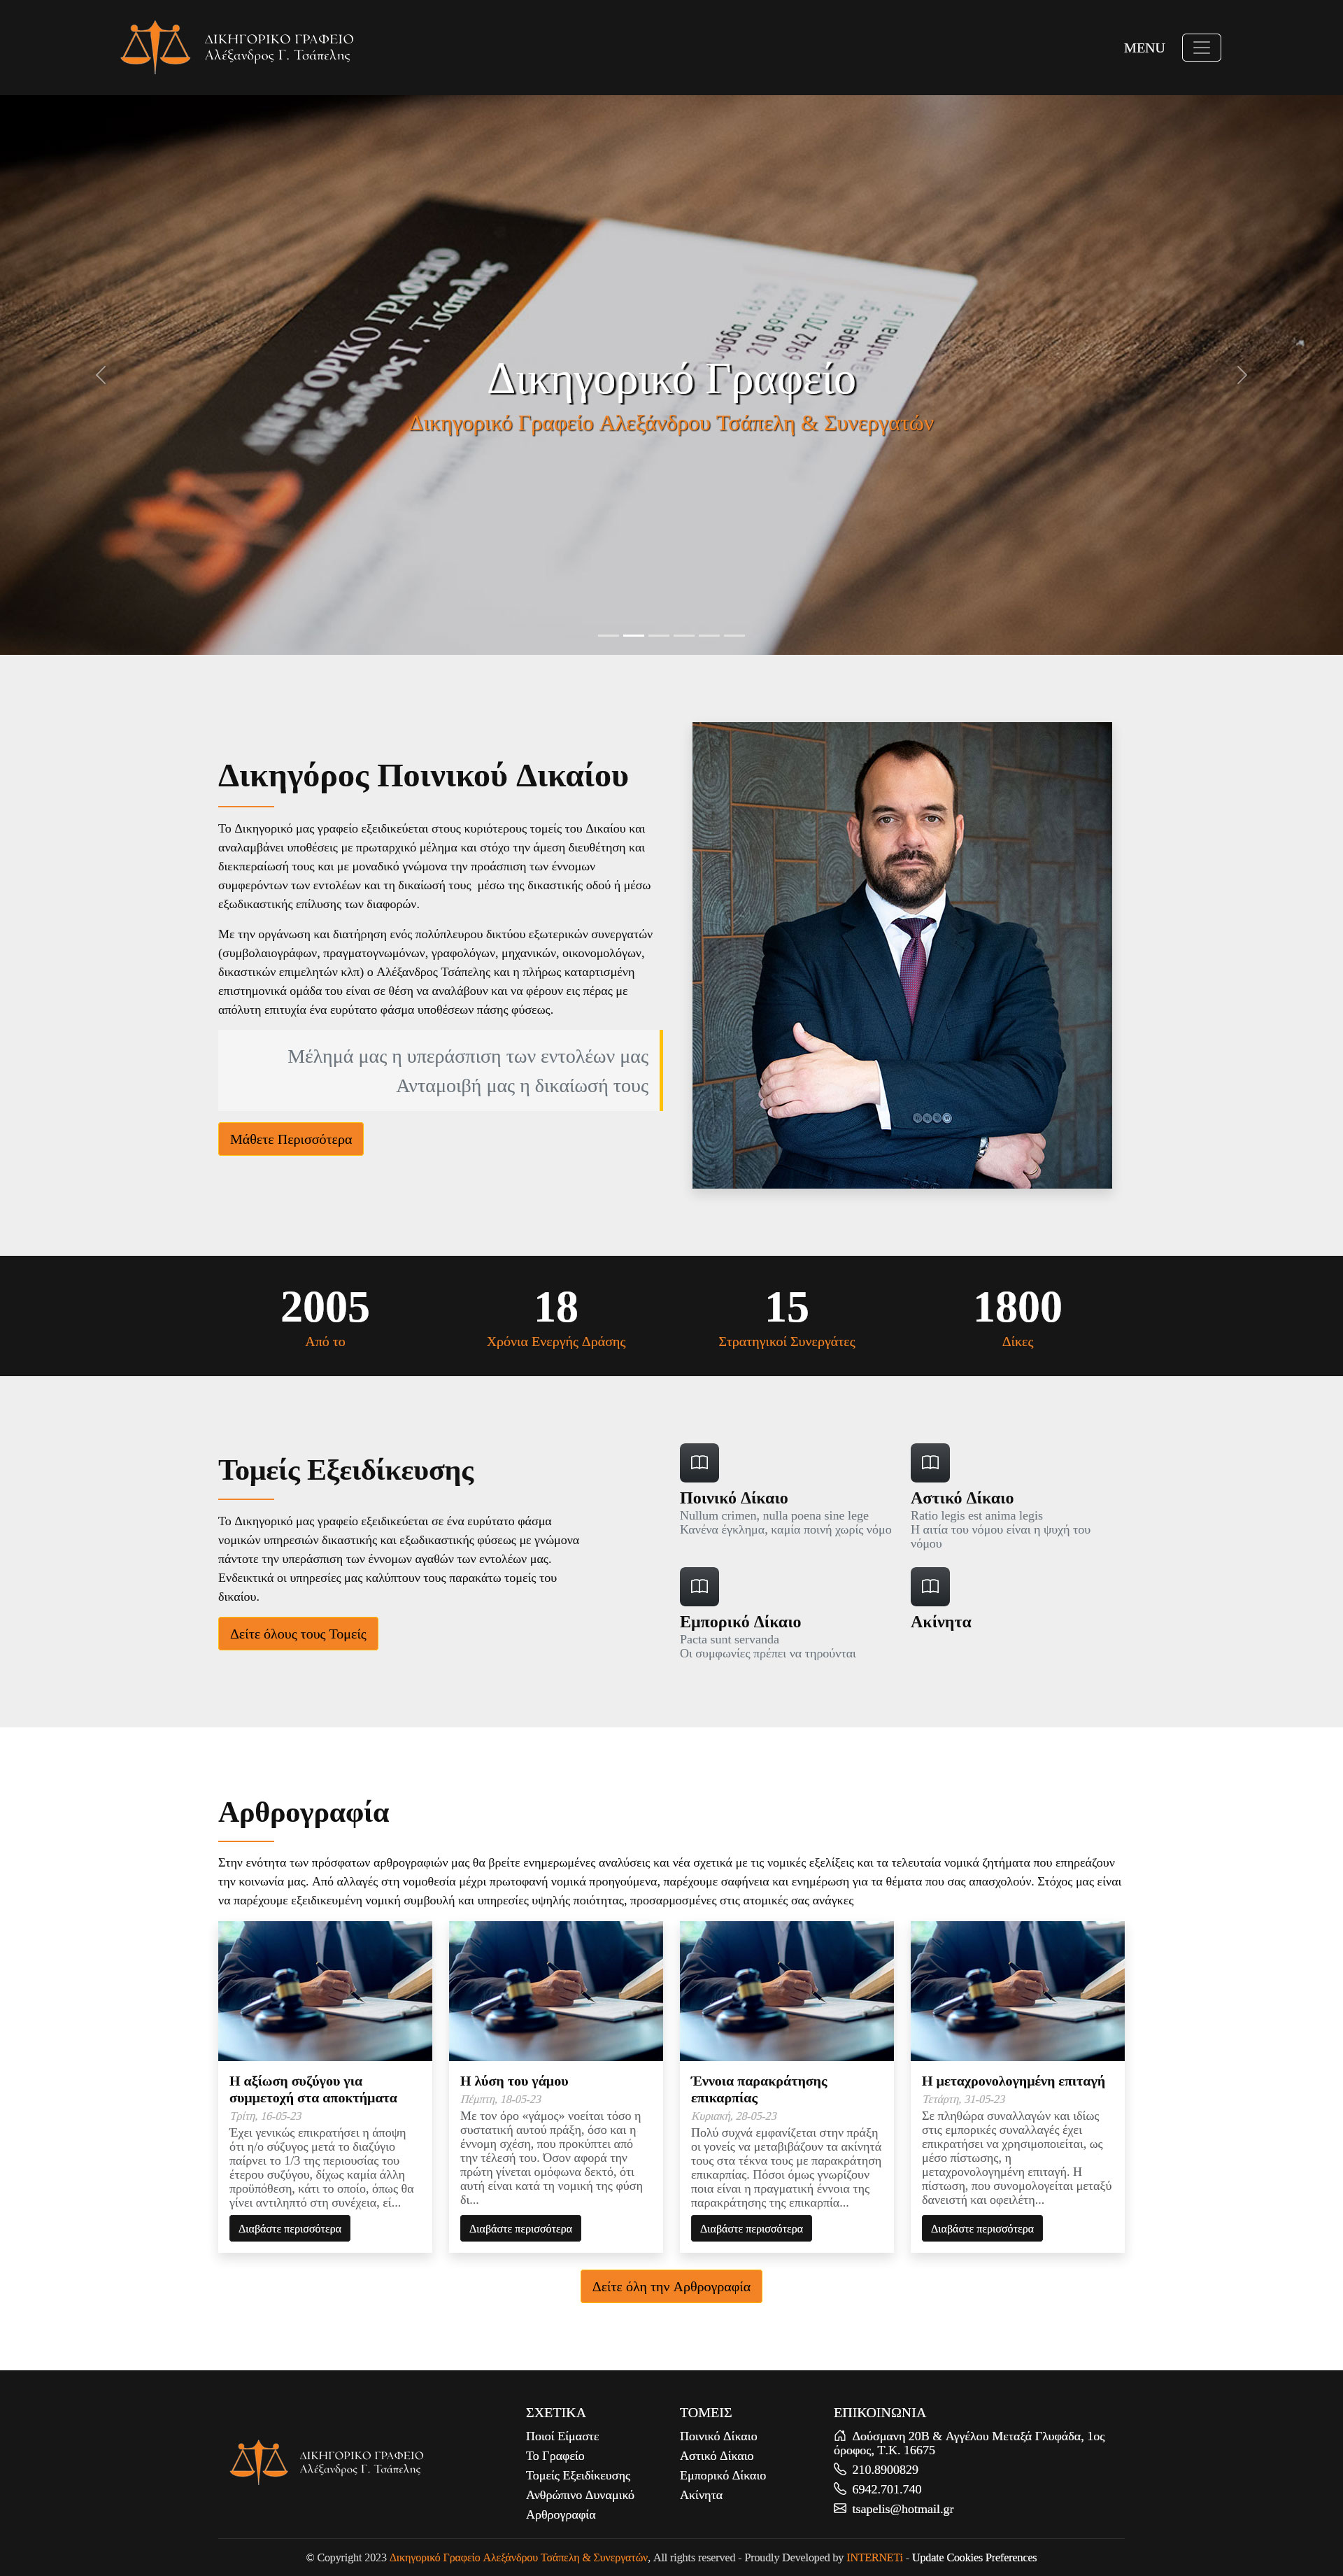 Κατασκευή ιστοσελίδων εταιρική παρουσίαση Δικηγορικό Γραφείο Αλεξάνδρου Τσάπελη & Συνεργατών